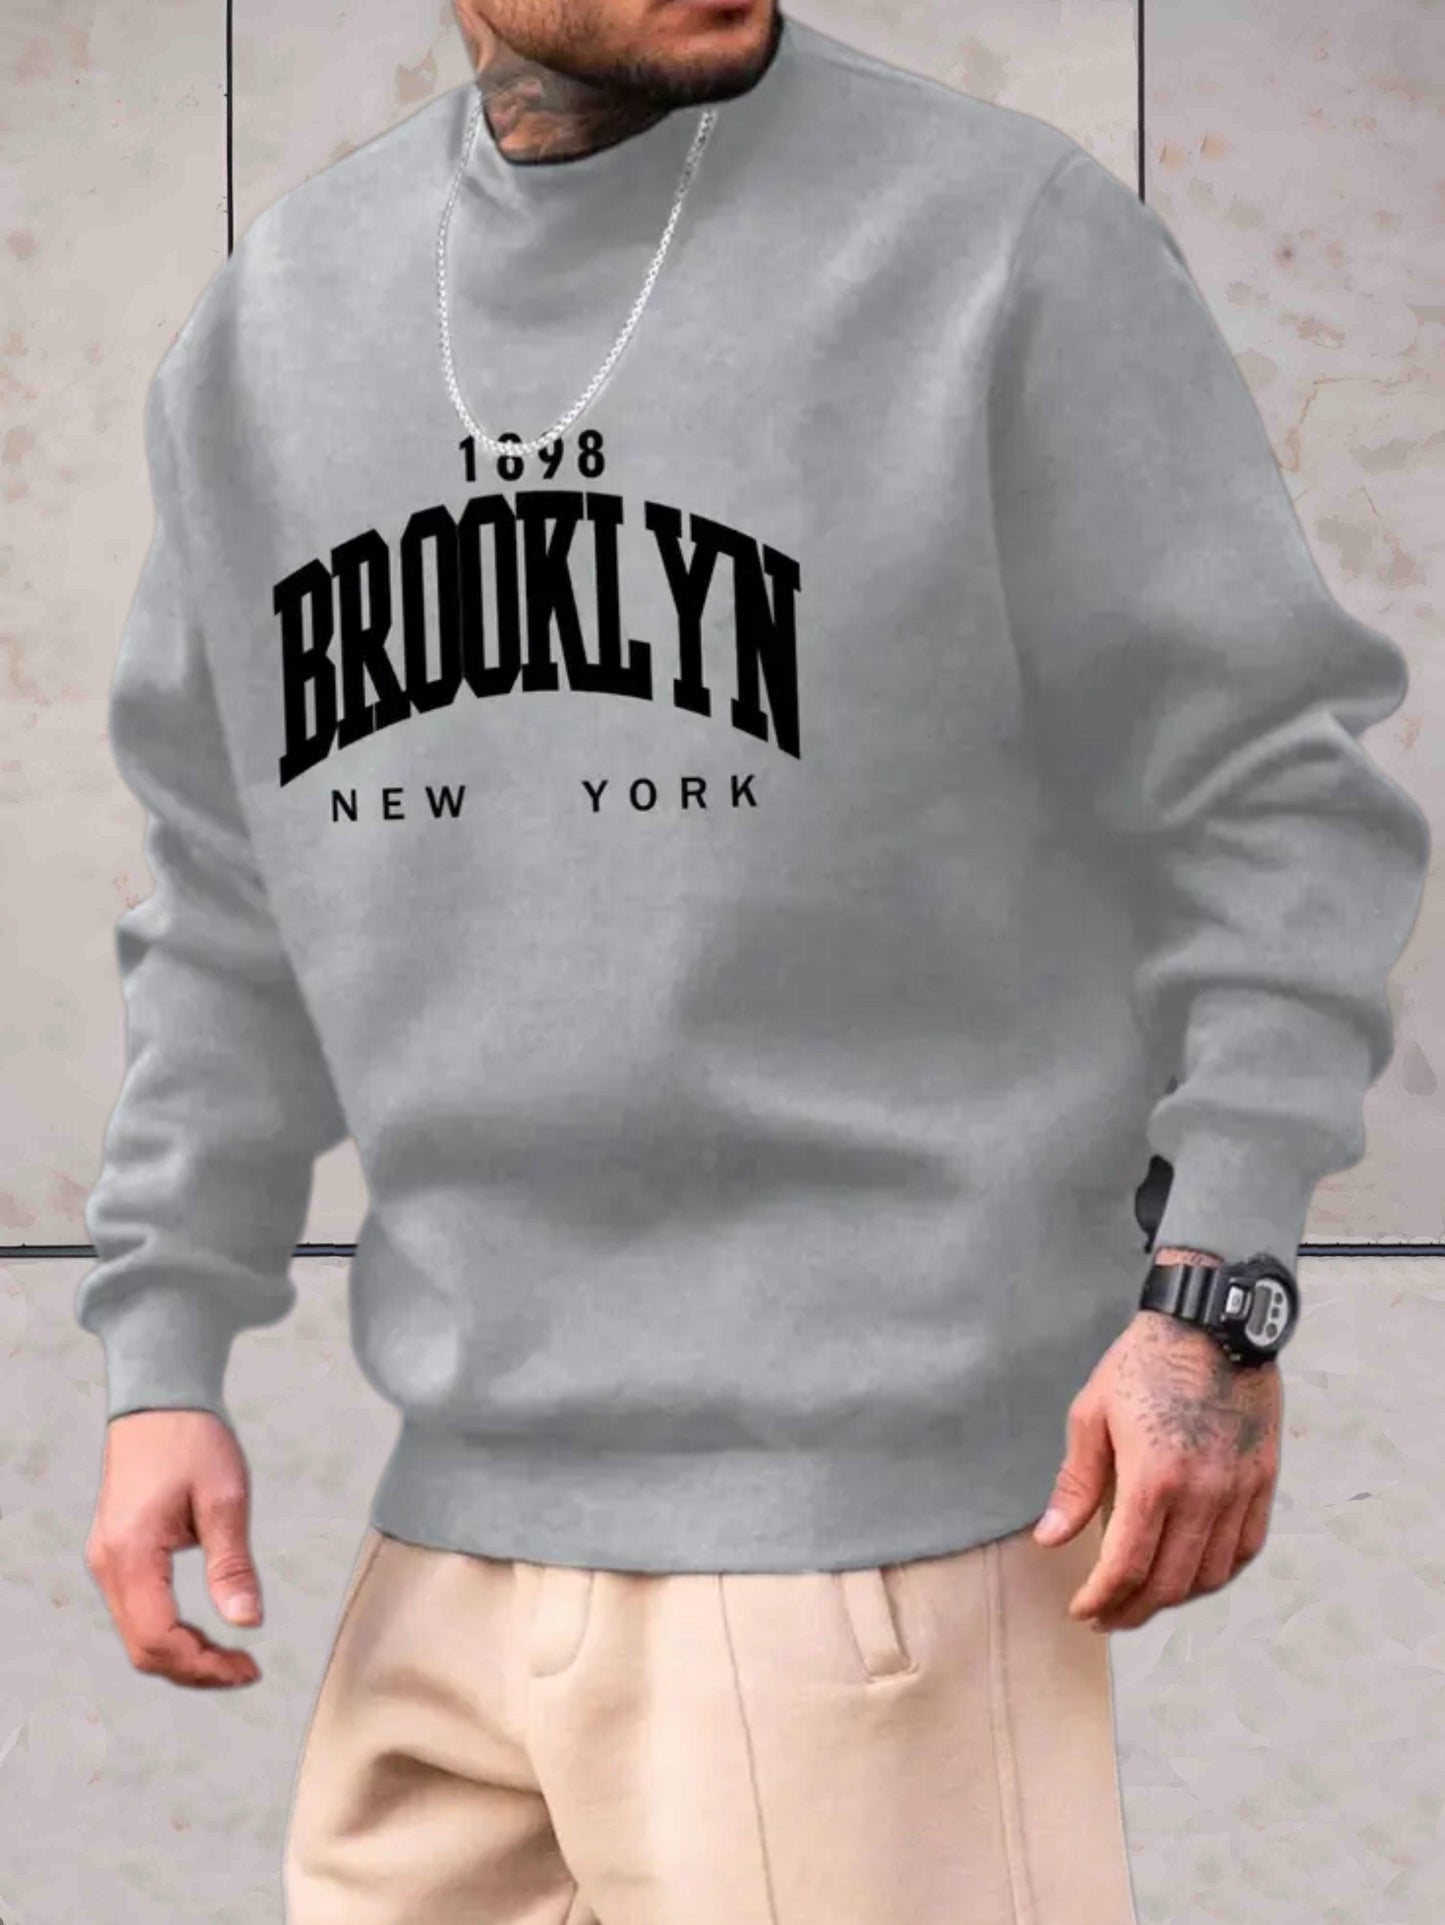 Kristof - Donkergrijze trui voor heren met 1898 Brooklyn New York print trui - Sky-Sense